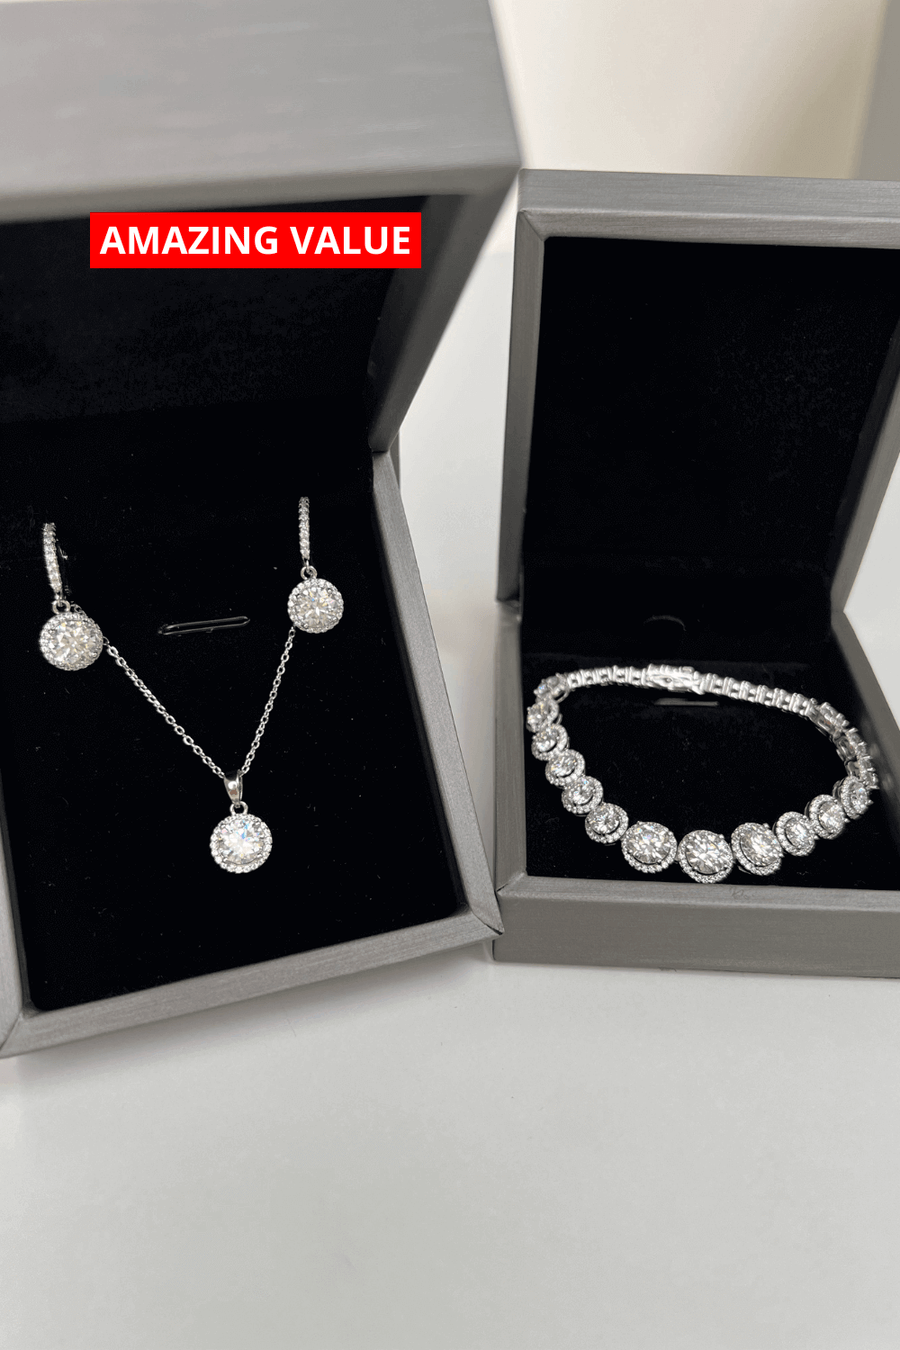 1# BEST Diamond Necklace, Earrings, Bracelet Jewelry Bundle Set Gift for Women | #1 Best Most Top Trendy Trending Round Diamond Necklace, Earrings, Bracelet Jewelry Gift for Women, Mother, Wife, Daughter, Ladies | MASON New York